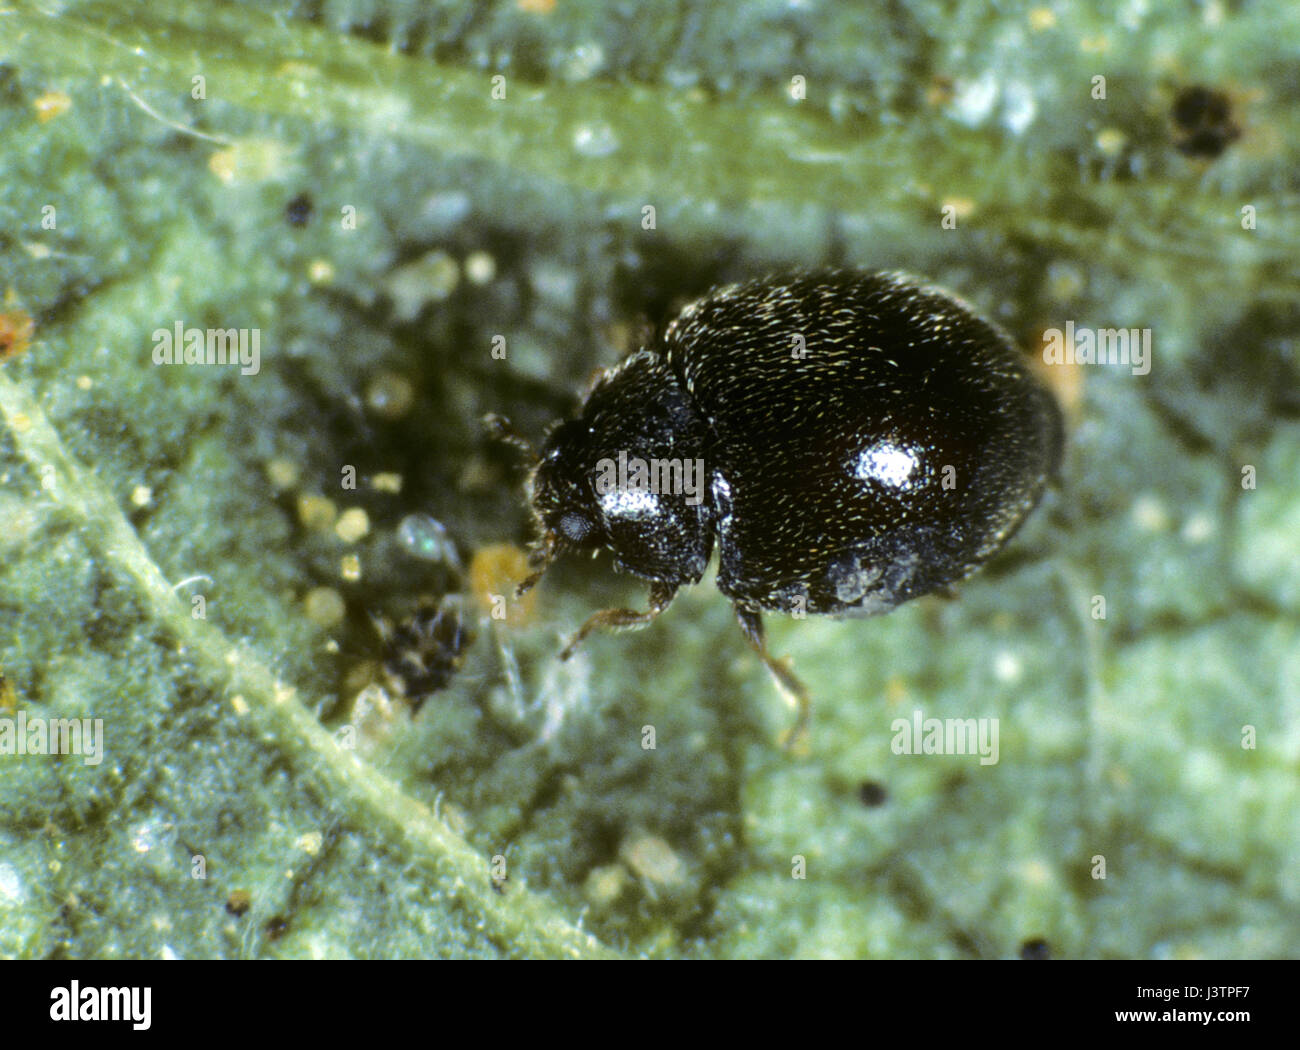 Minute schwarz Marienkäfer, Stethorus Punctillium, eine kleine biologische Schädlingsbekämpfung Insekt Jagd auf zwei-spotted Spinnmilben Stockfoto